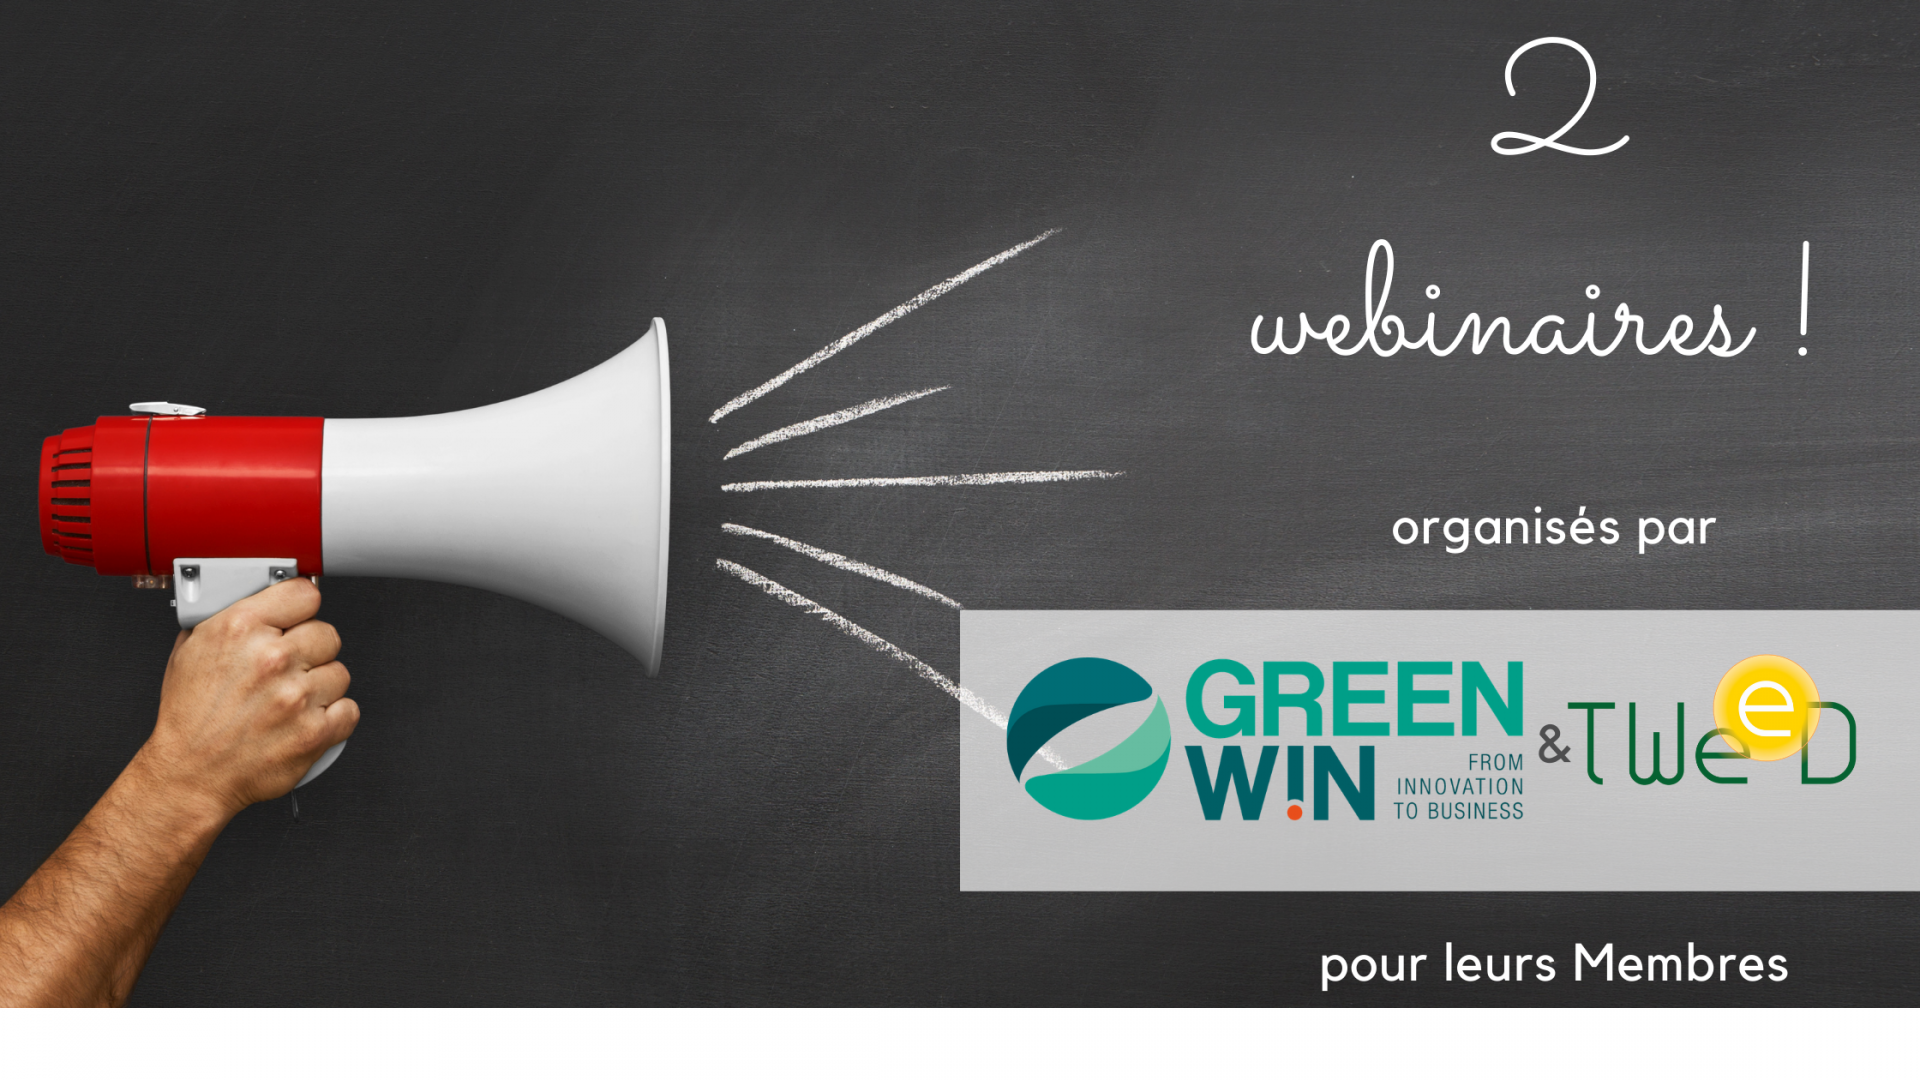 GreenWin & le Cluster TWEED invitent leurs Membres à 2 webinaires sur des enjeux majeurs